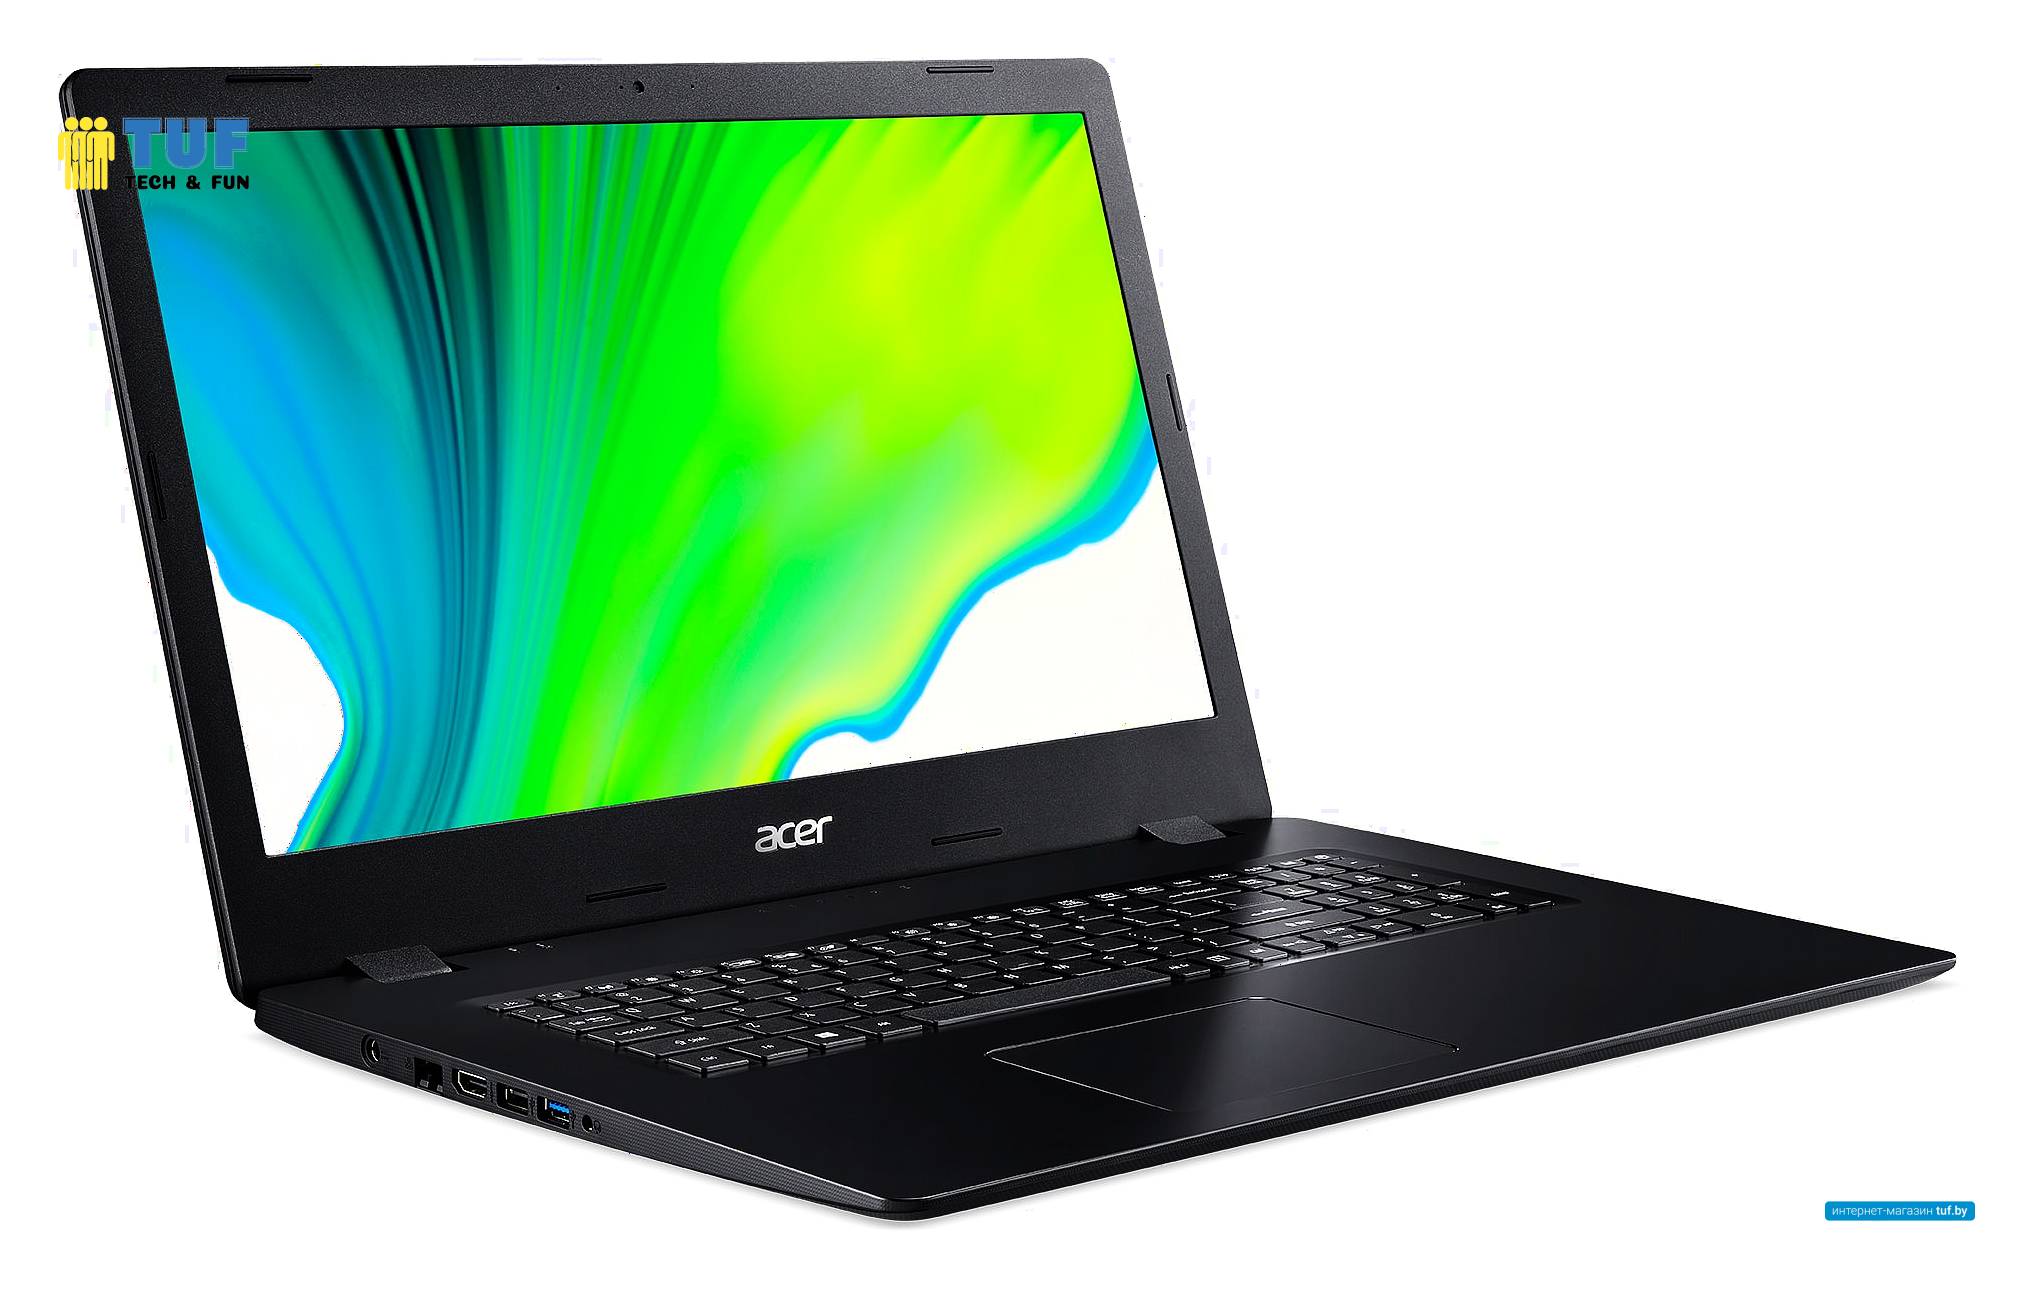 Ноутбук Acer Aspire 3 A317-52-522F NX.HZWER.006